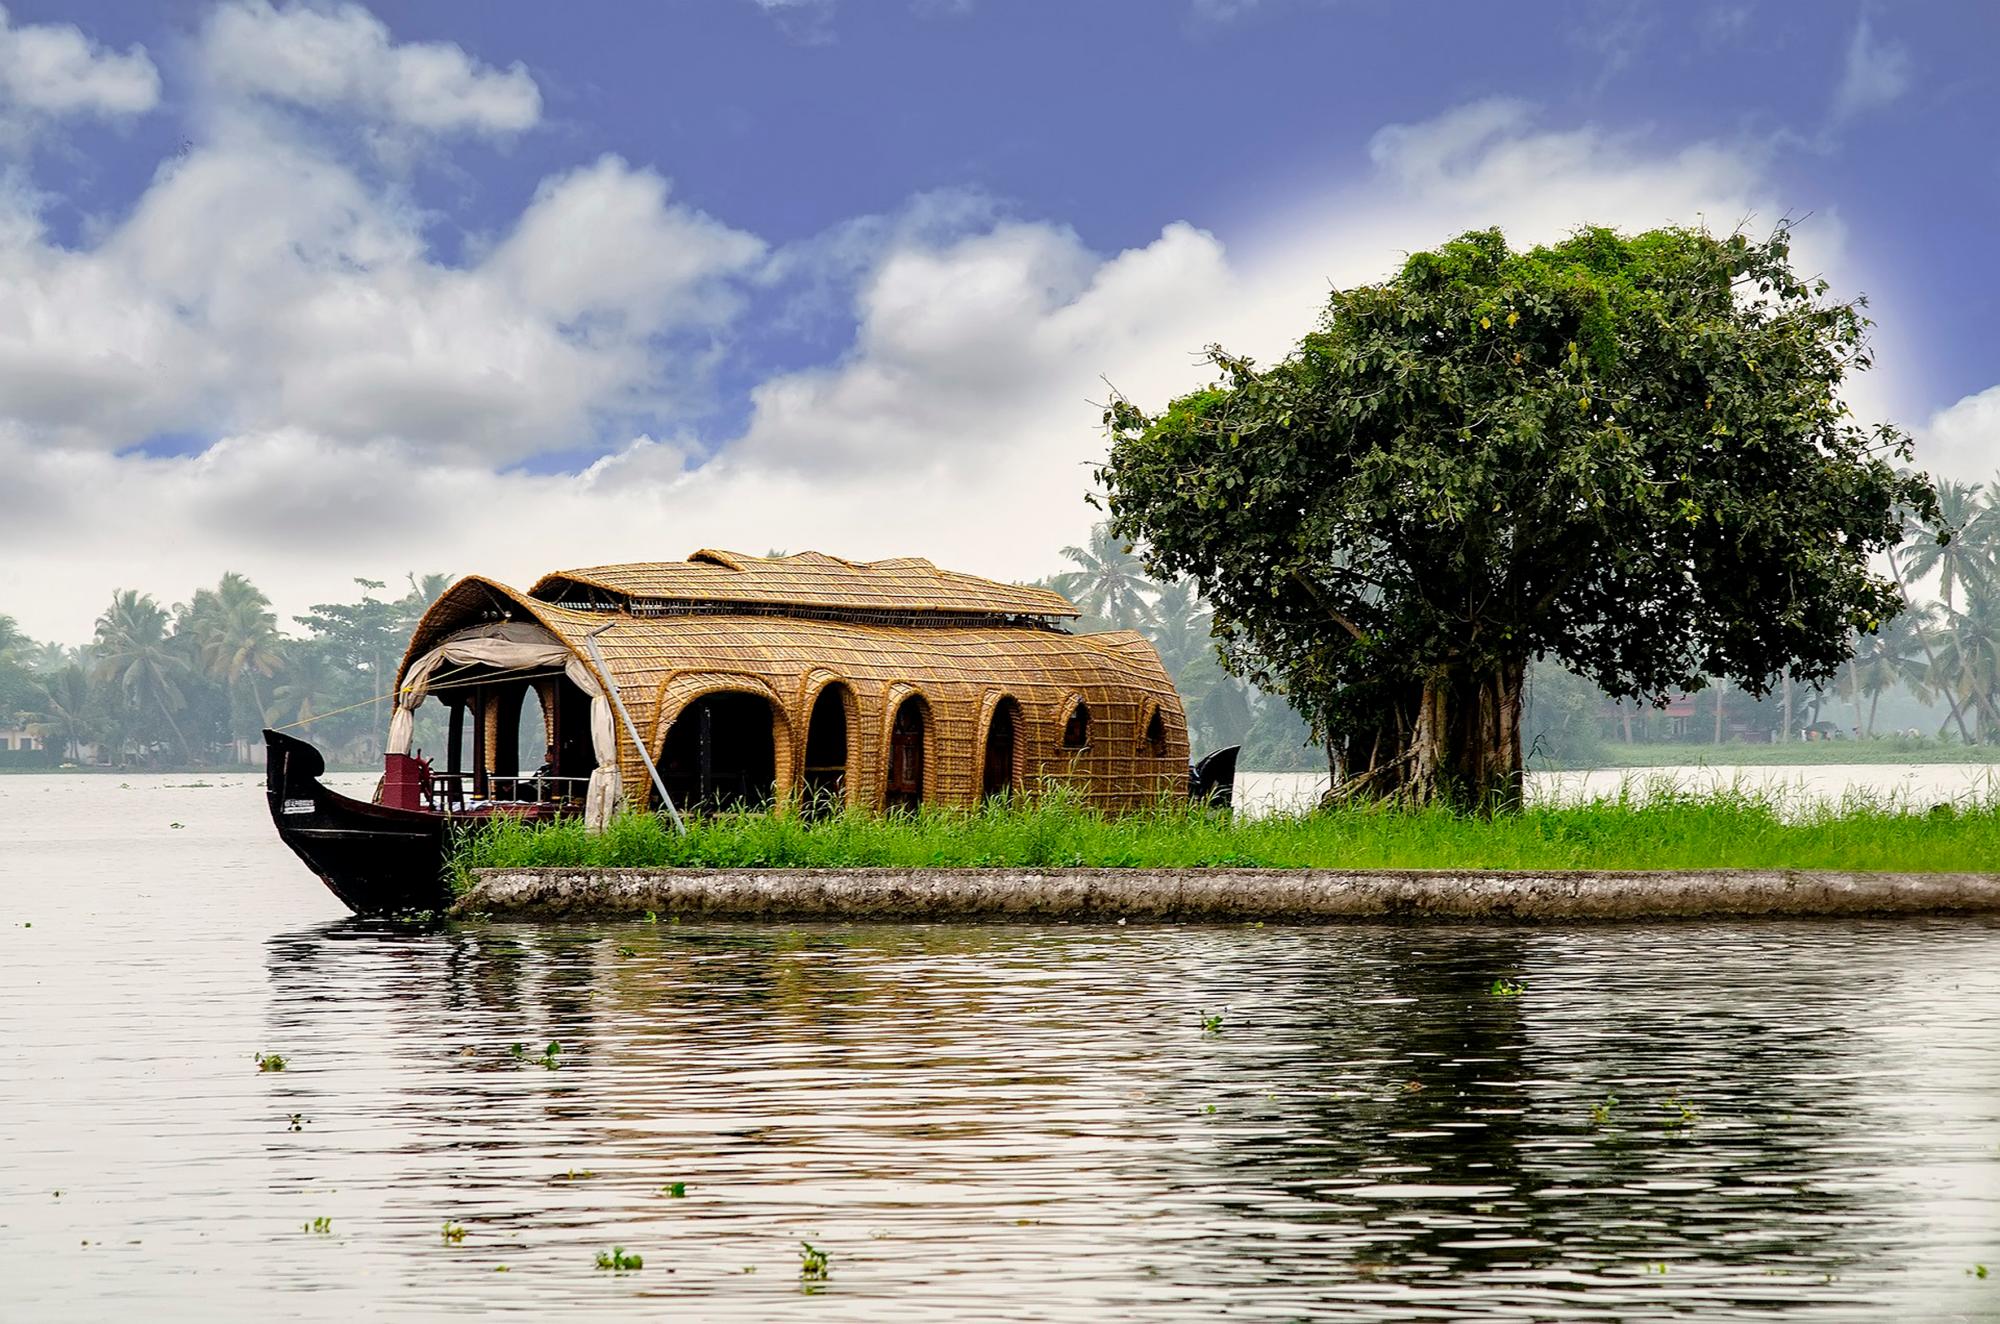 Una bella imagen de una casa flotante en Kerala, India con un paisaje muy sugerente alrededor.